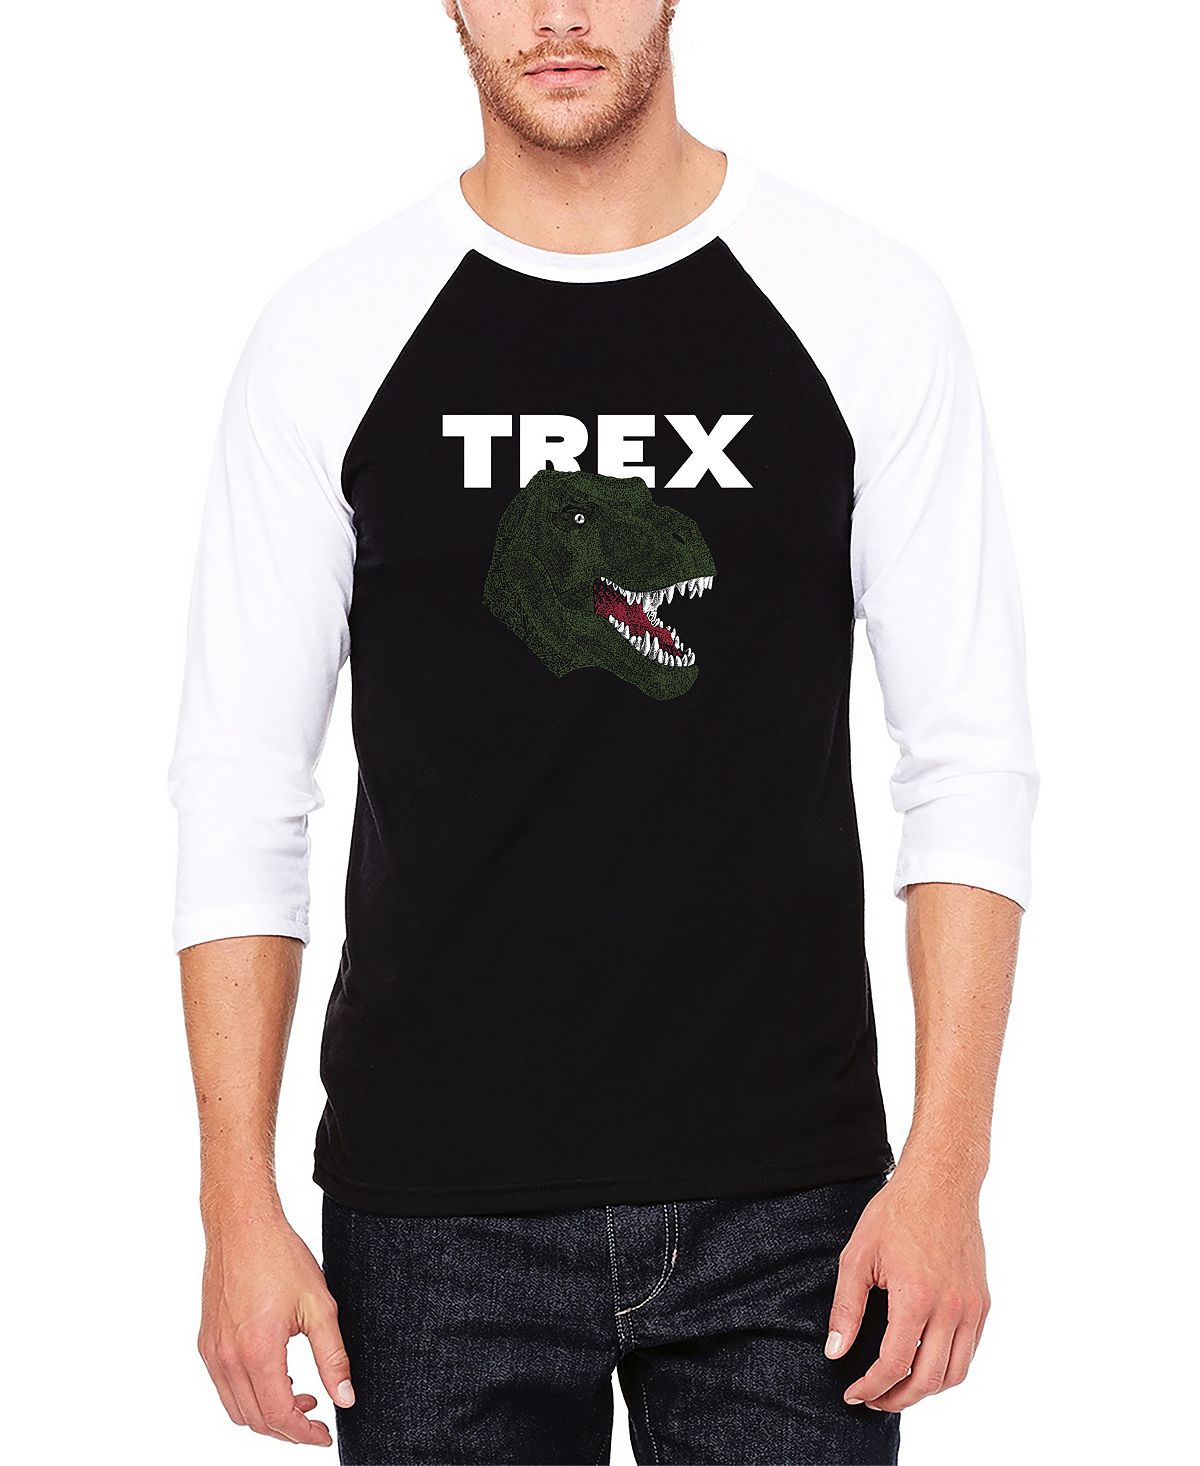 виниловая пластинка t rex t rex vinyl Мужская футболка с бейсбольным регланом word art t-rex head LA Pop Art, мульти